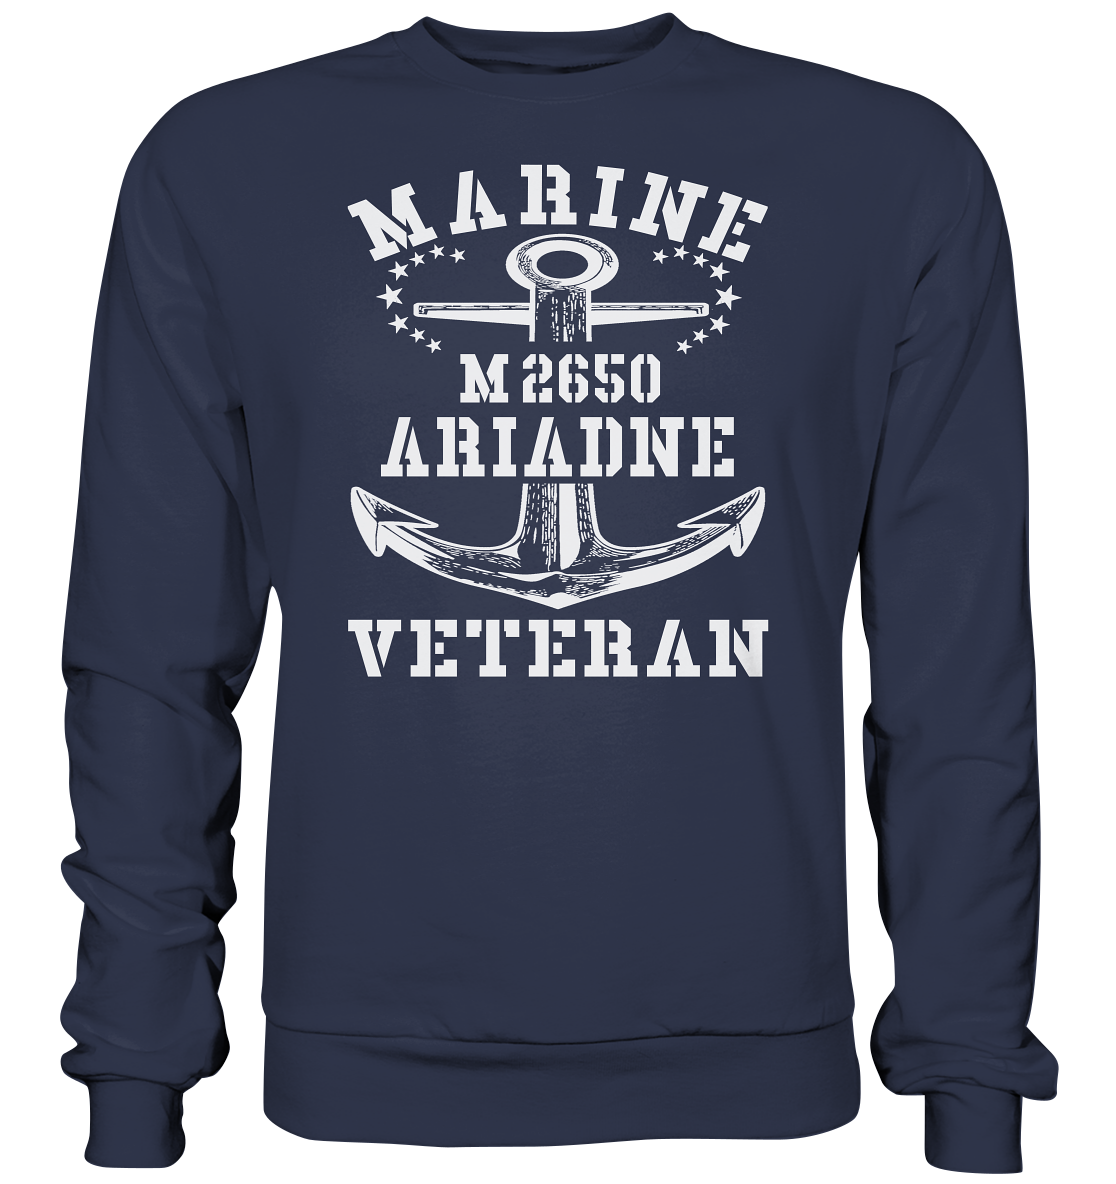 BiMi M2650 ARIADNE Marine Veteran - Premium Sweatshirt